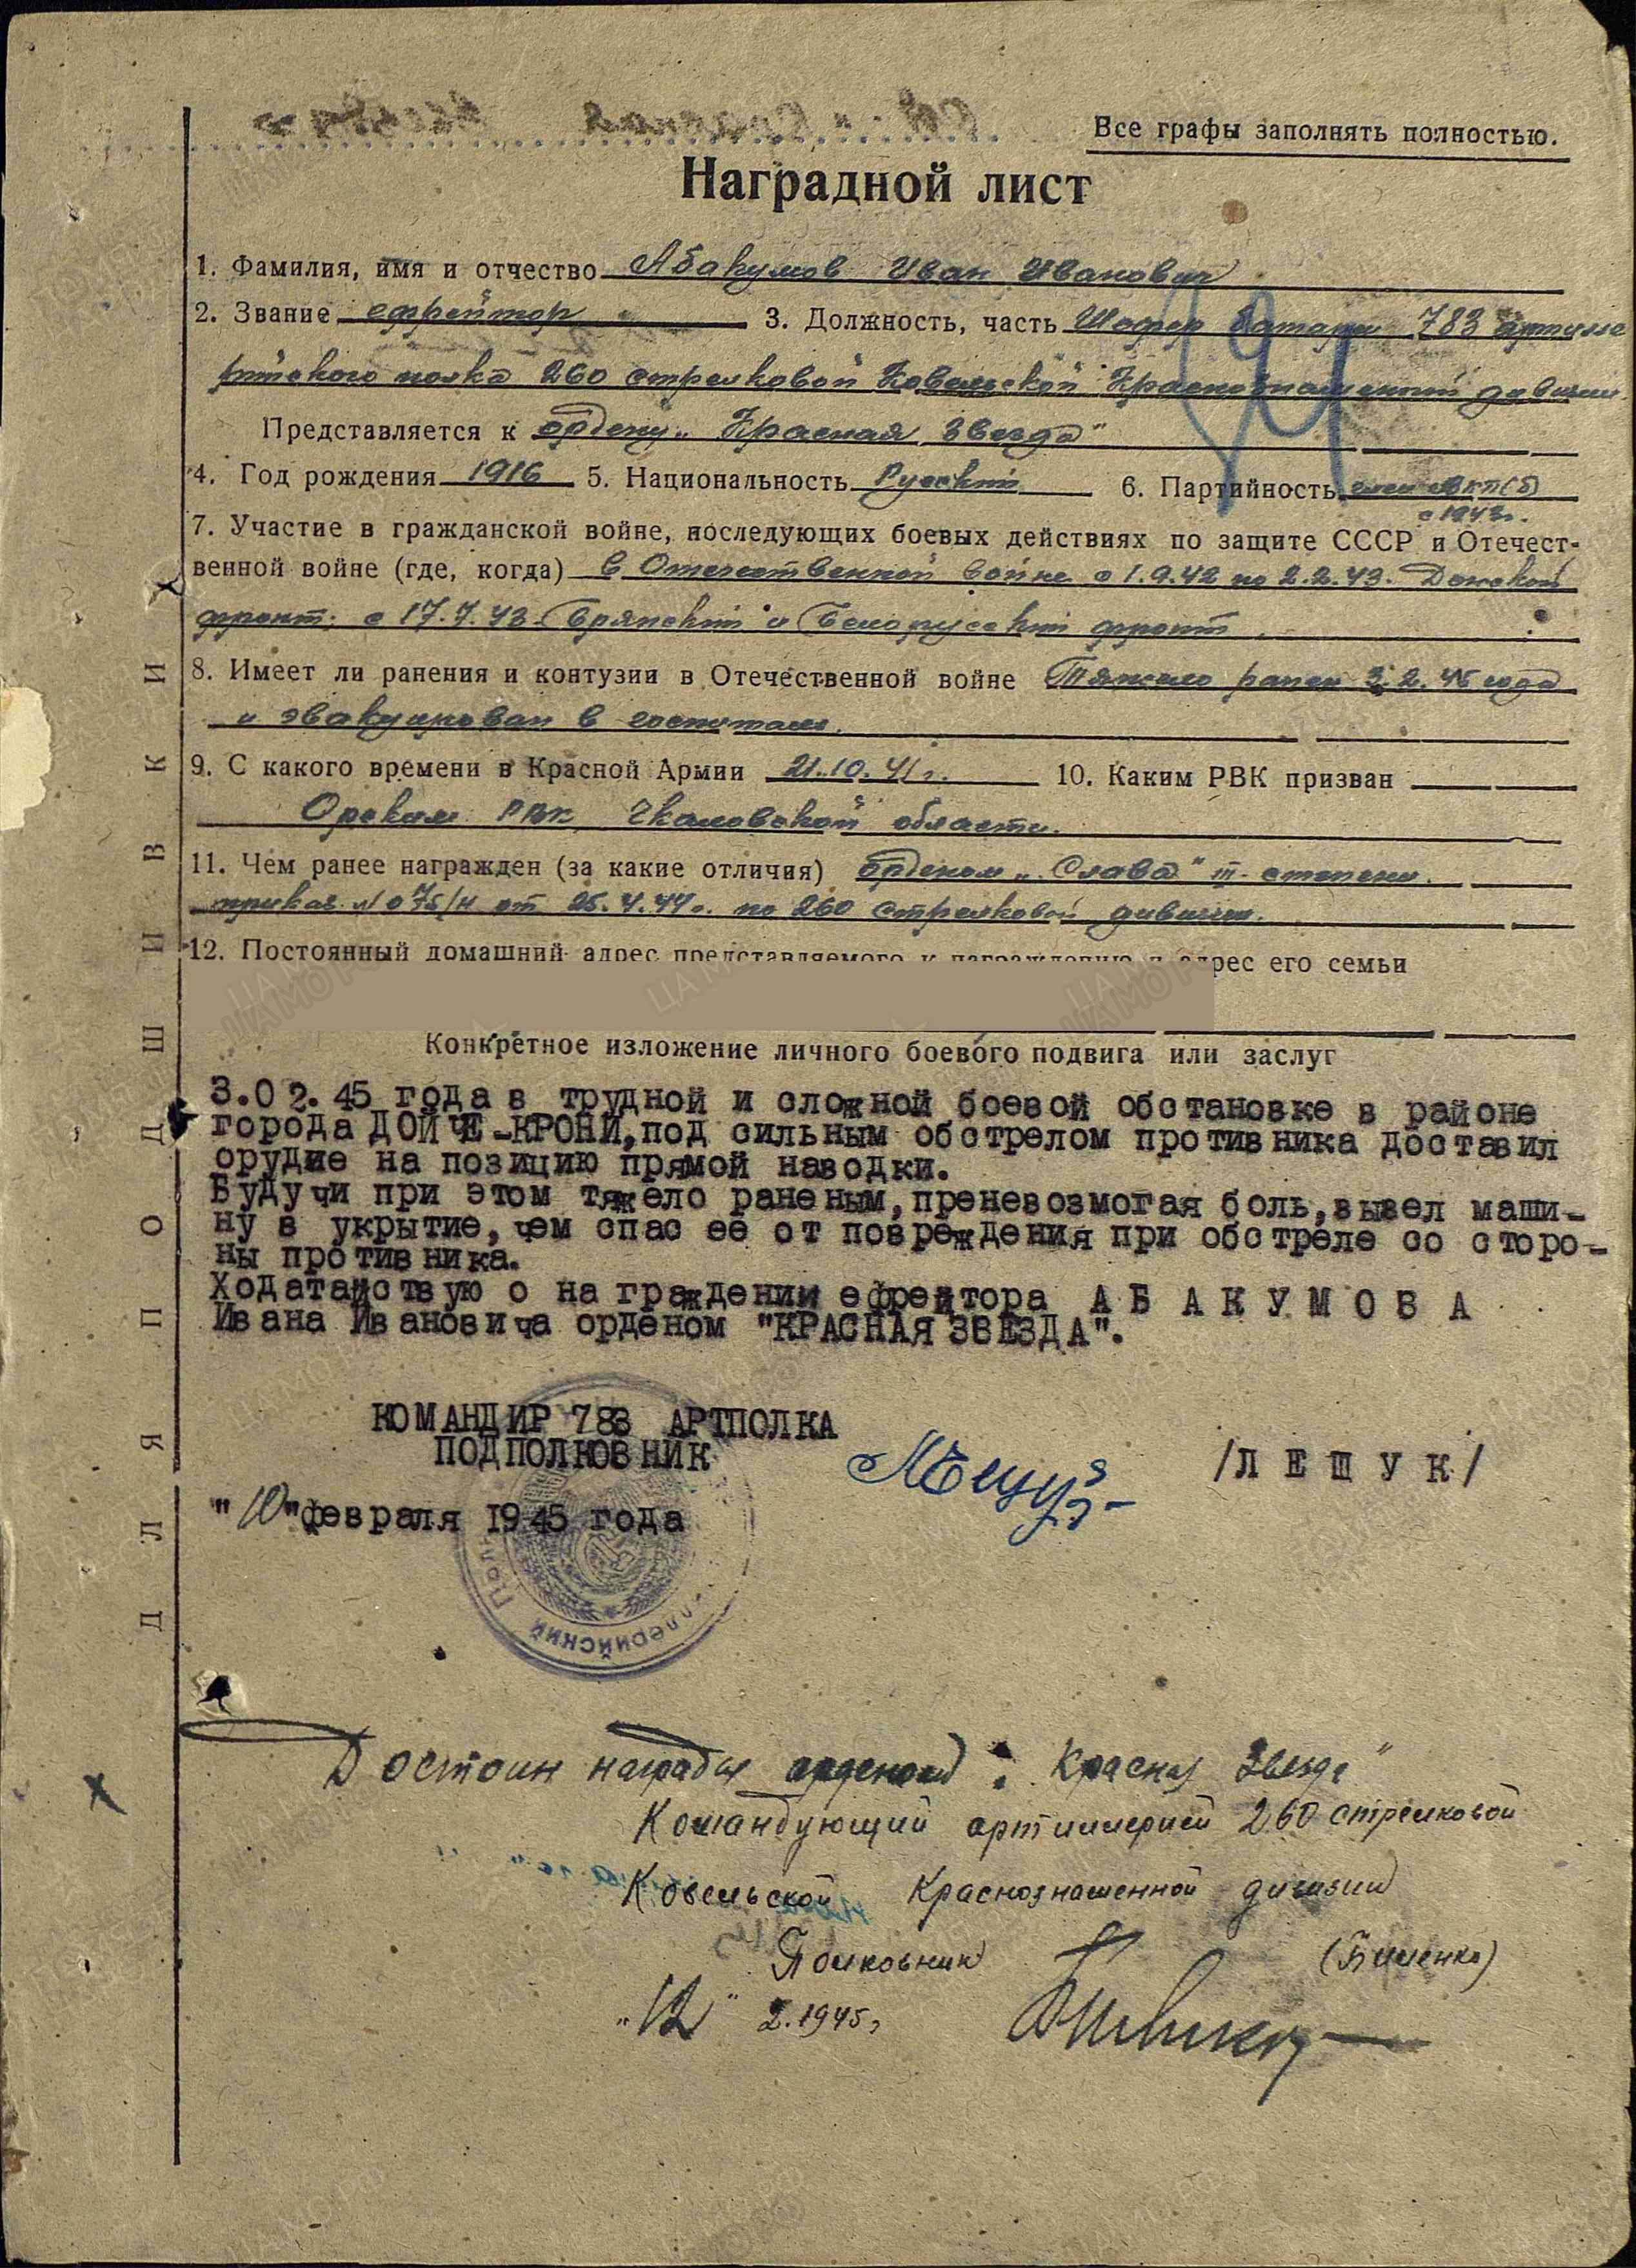 Абакумов И.И. Наградной лист от 10.02.1945 г., орден Красной Звезды (архивная копия)